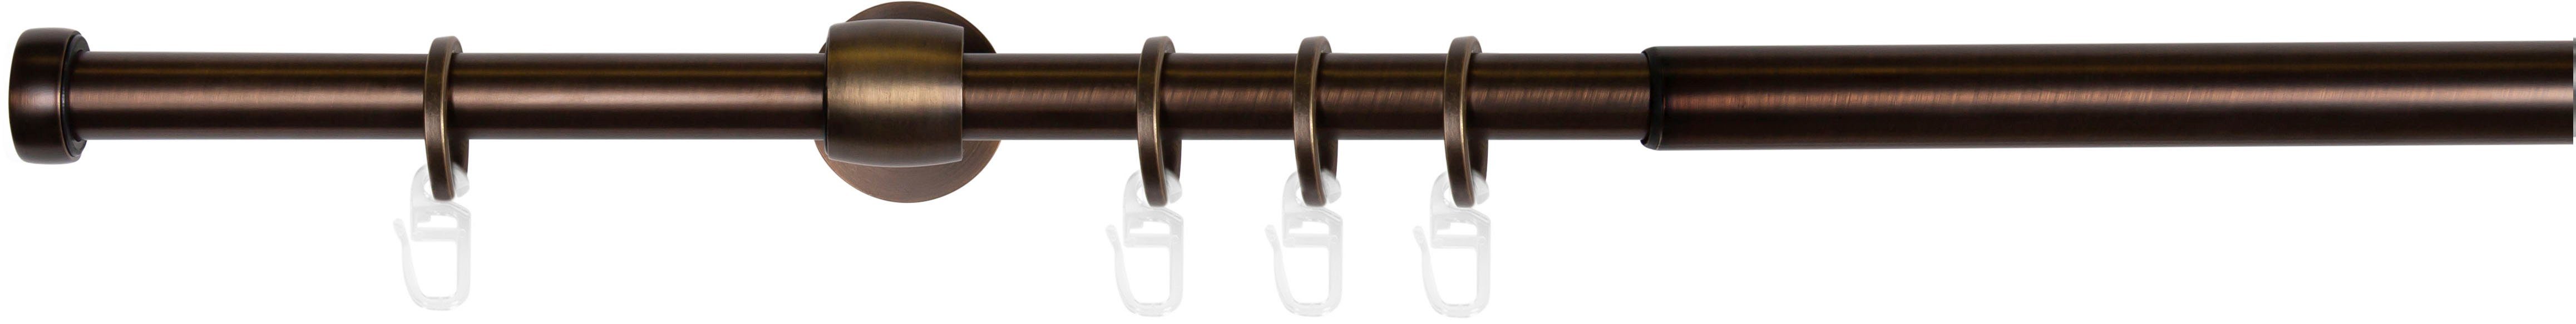 Gardinenstange Cap-Noble, mydeco, 1-läufig, ausziehbar bronzefarben 16 Ø mm